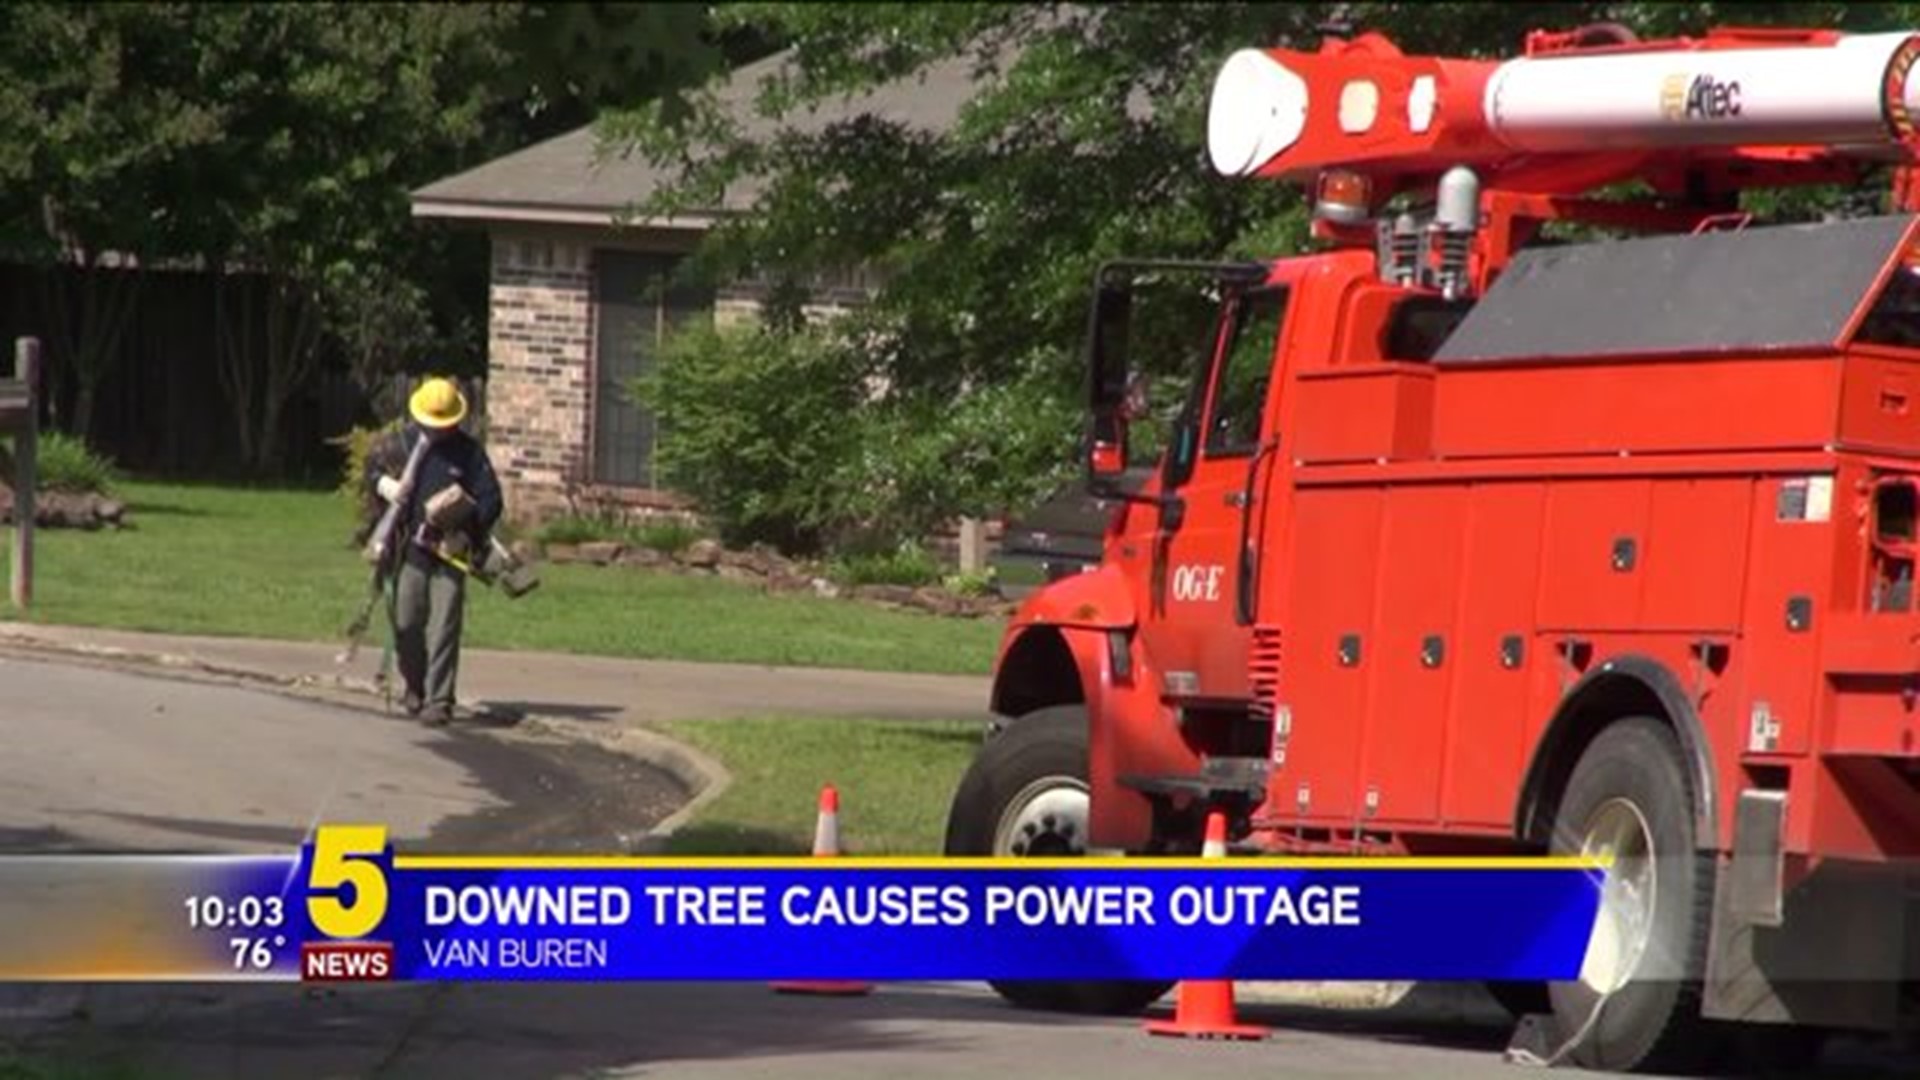 DOWNED TREE CAUSES POWER OUTAGE IN VAN BUREN